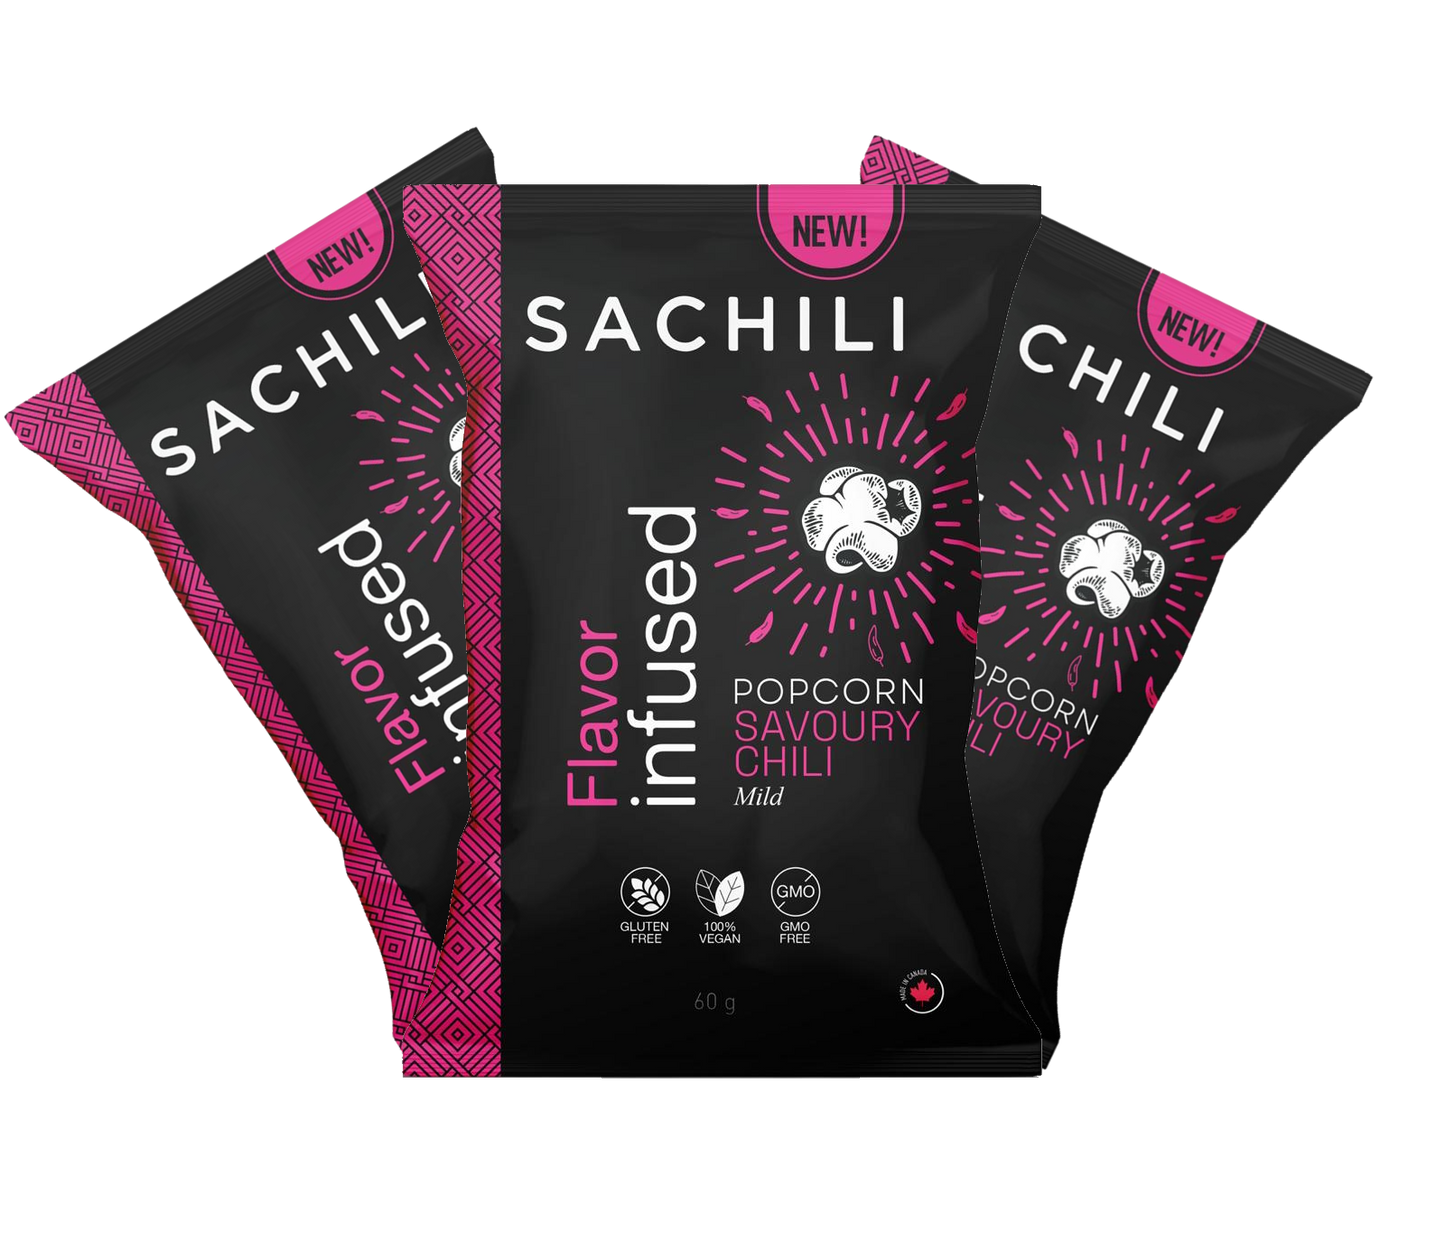 Sachili Gourmet Vegan Popcorn - Savoury Chili